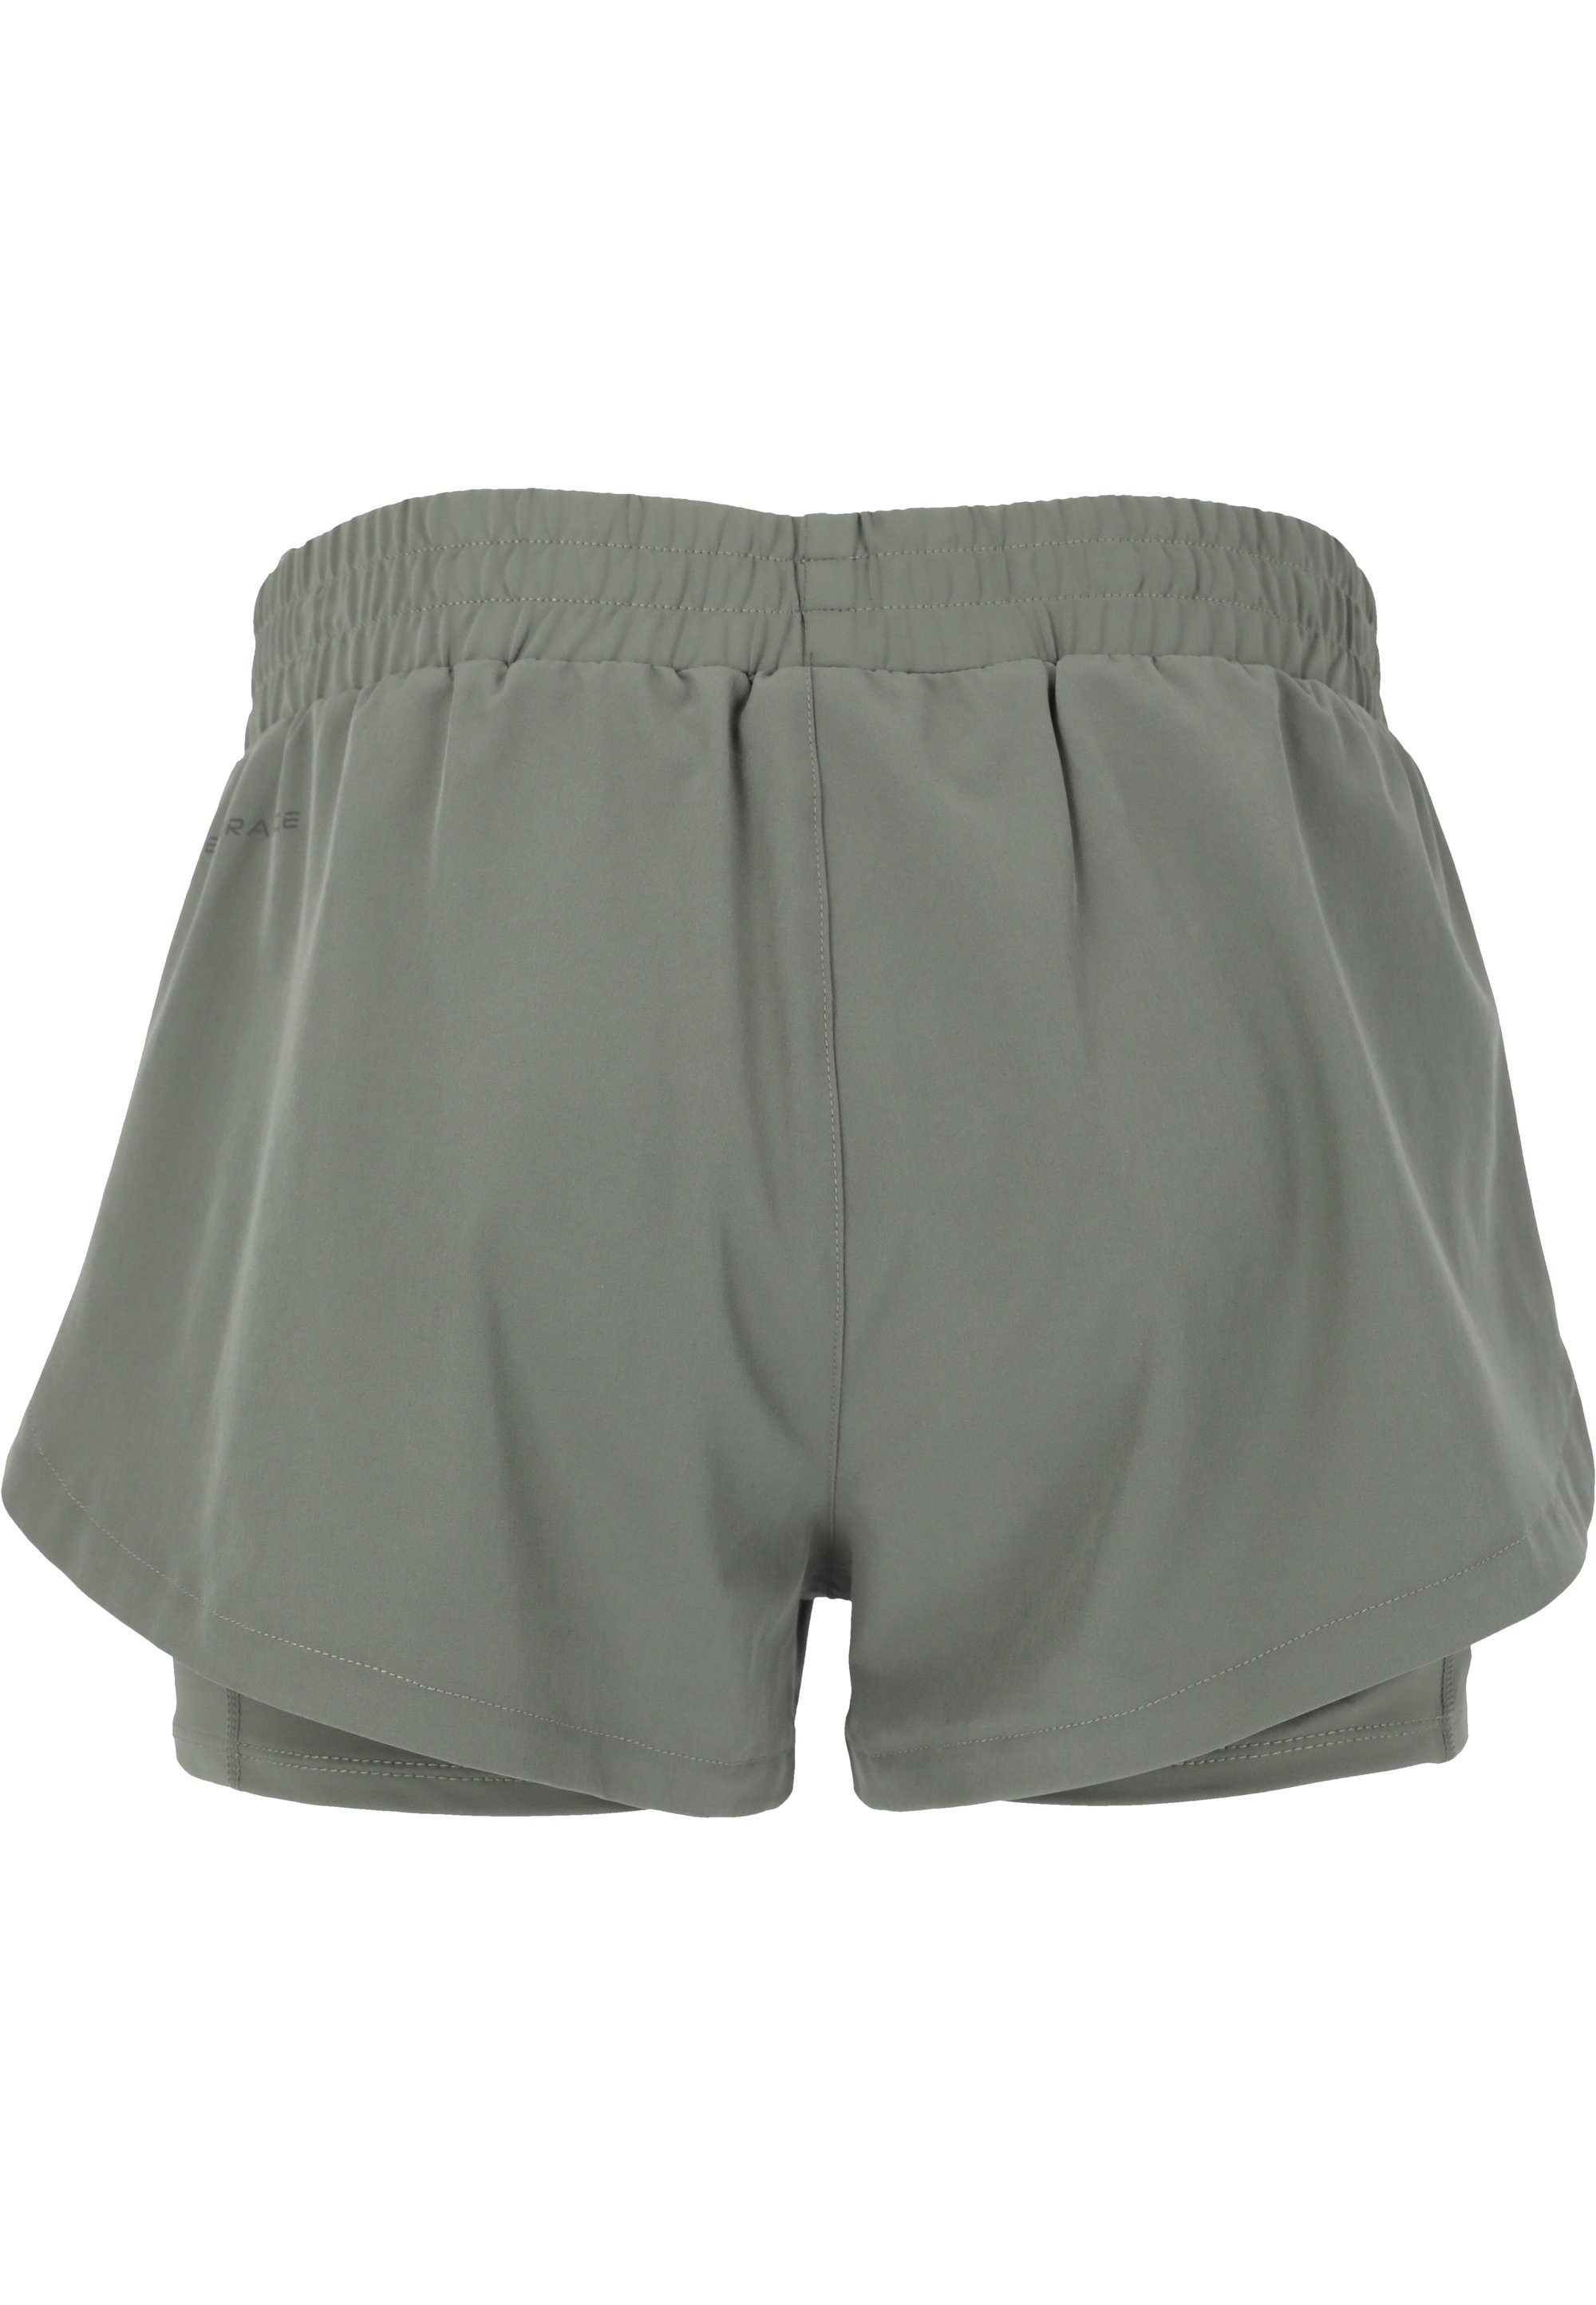 Yarol ENDURANCE grün Shorts praktischer mit 2-in-1-Funktion